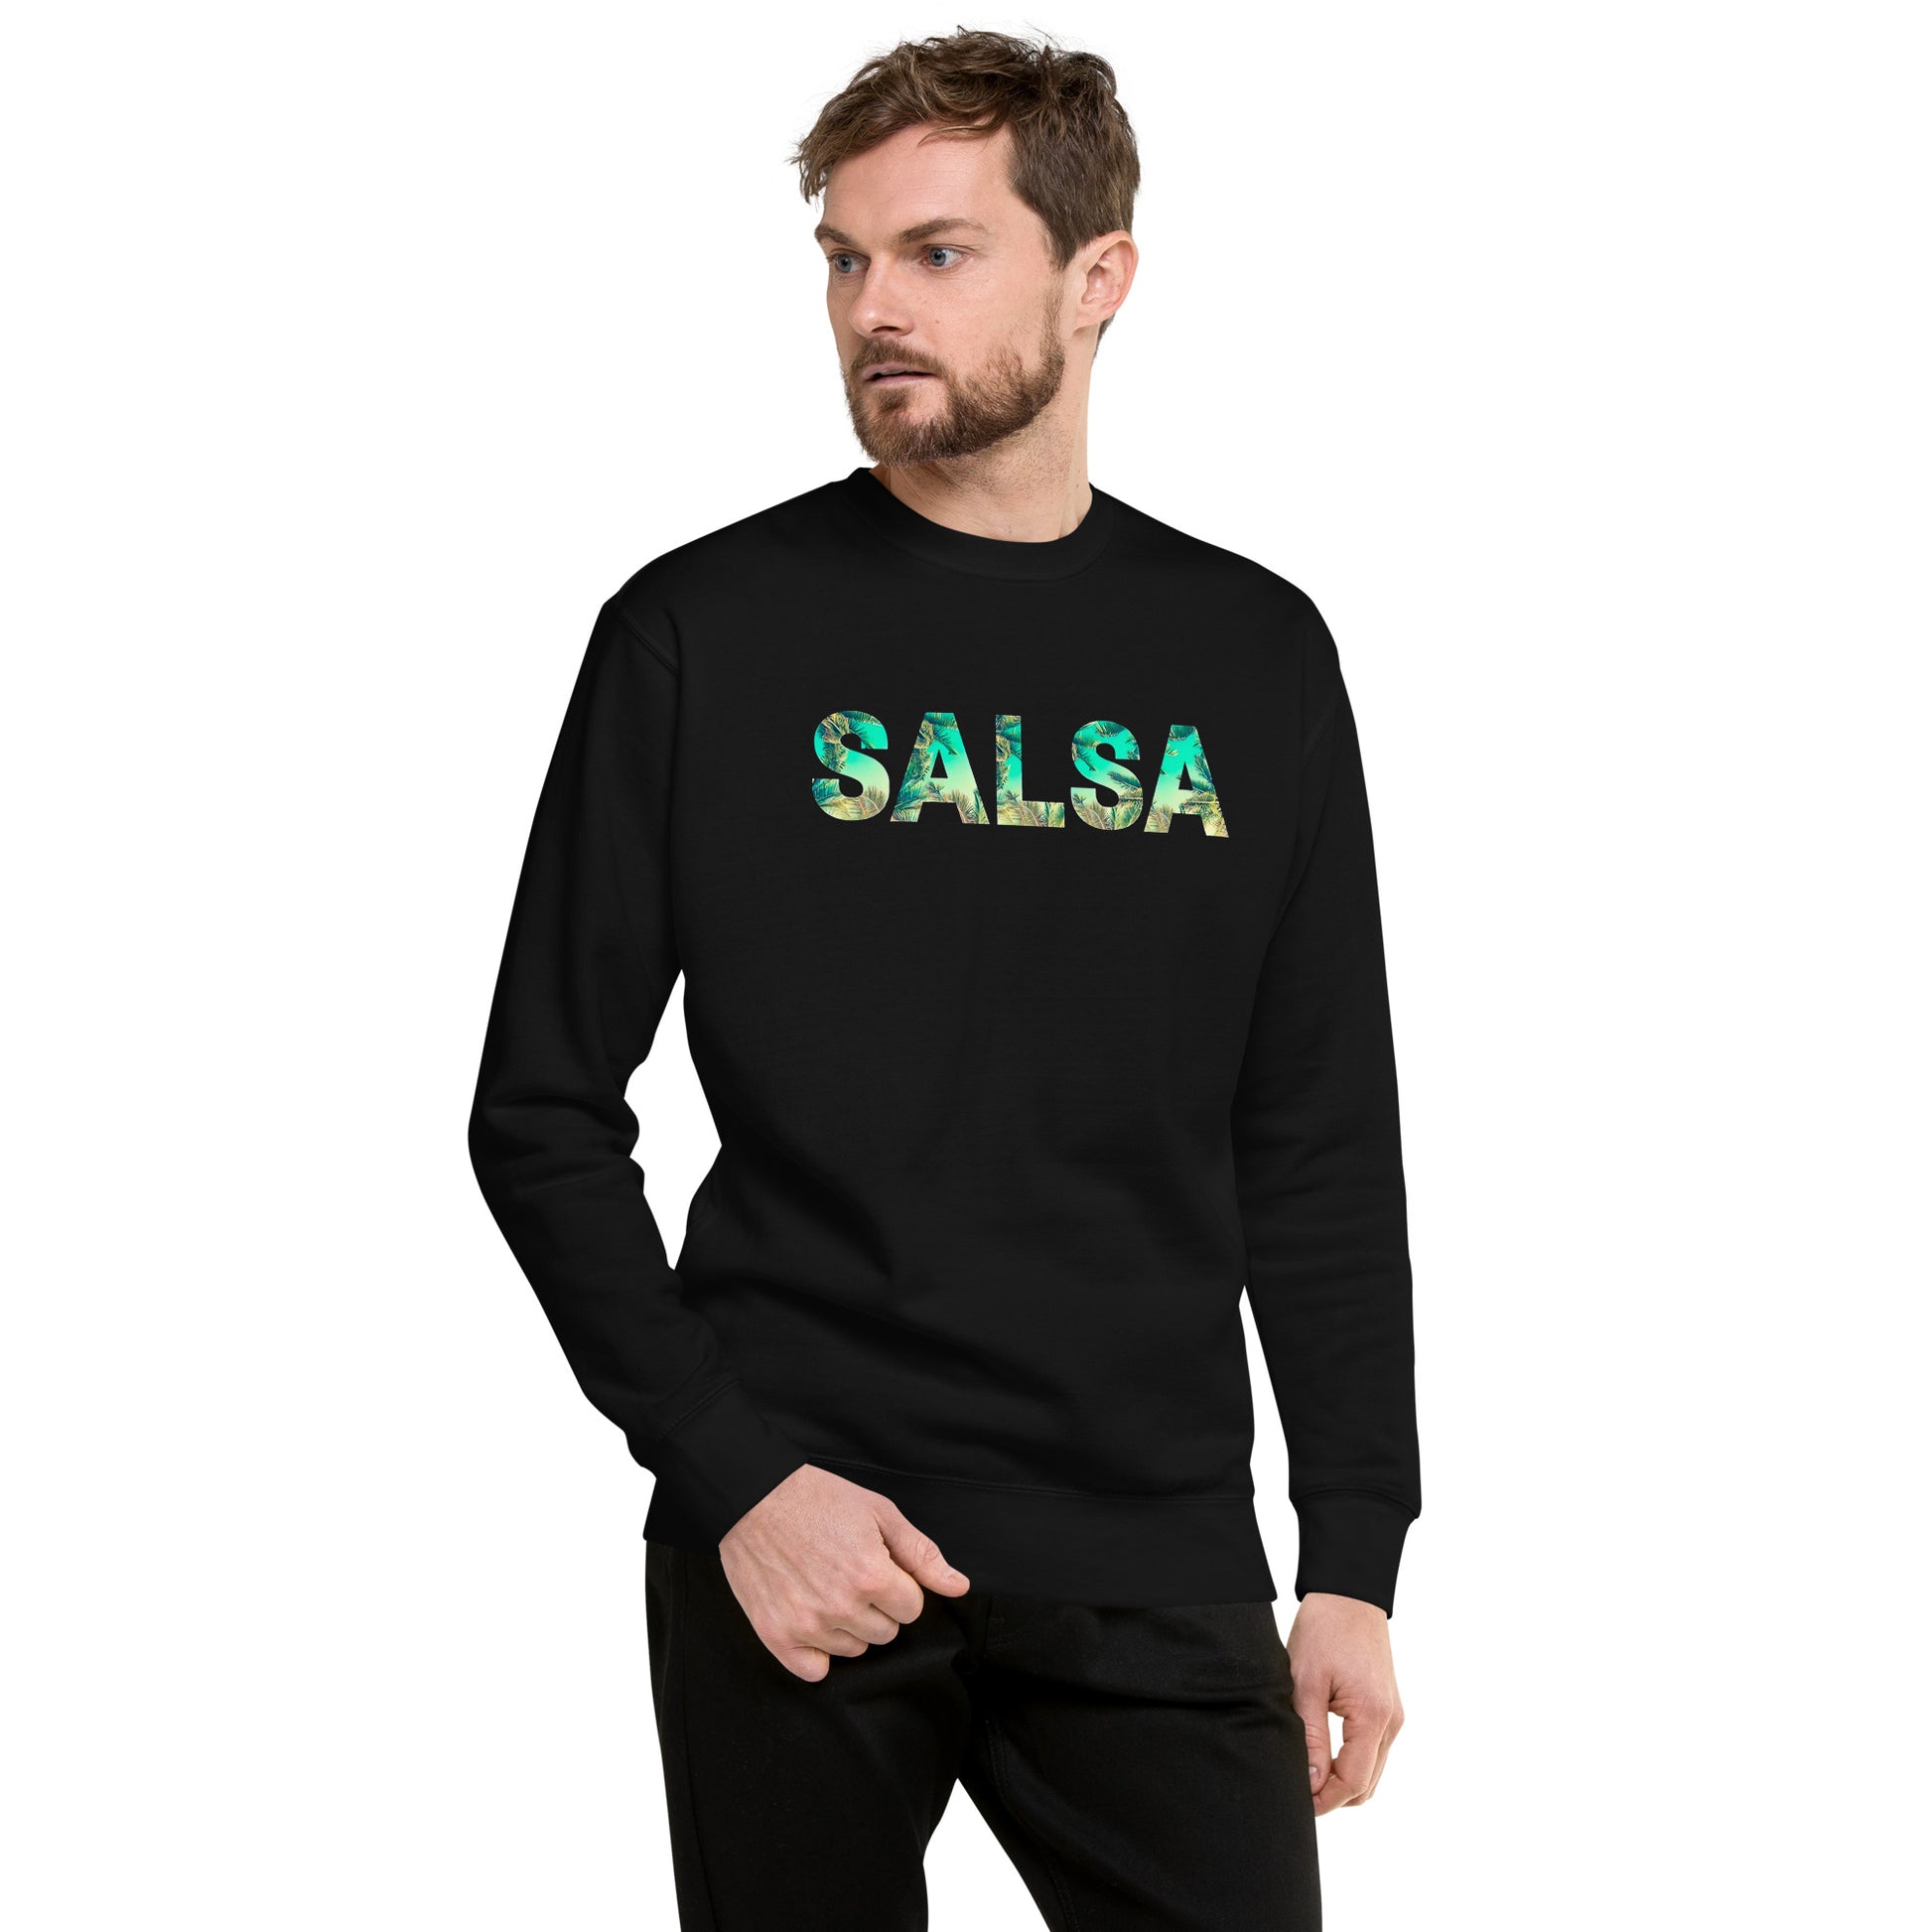 Suéter de Salsa Tropical ,Descubre calidad excepcional y estampados duraderos. Encuentra estilo y orgullo en cada prenda. Compra ahora!